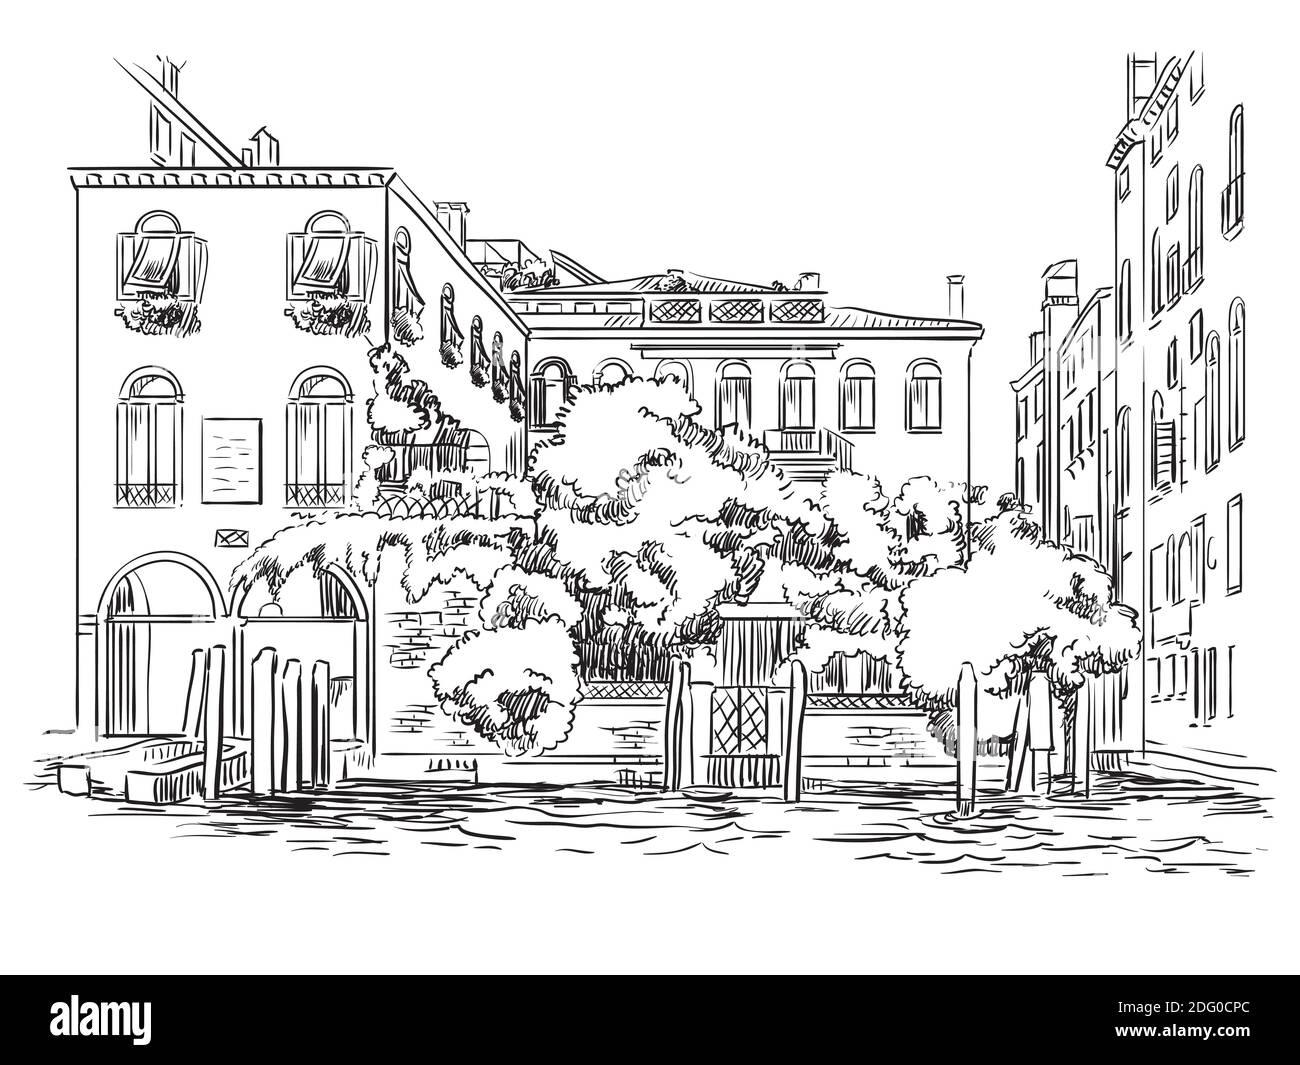 Illustration vectorielle à la main de Venise. Venise paysage urbain croquis dessiné à la main en noir isolé sur fond blanc. Concept de voyage. Pour l'impression Illustration de Vecteur